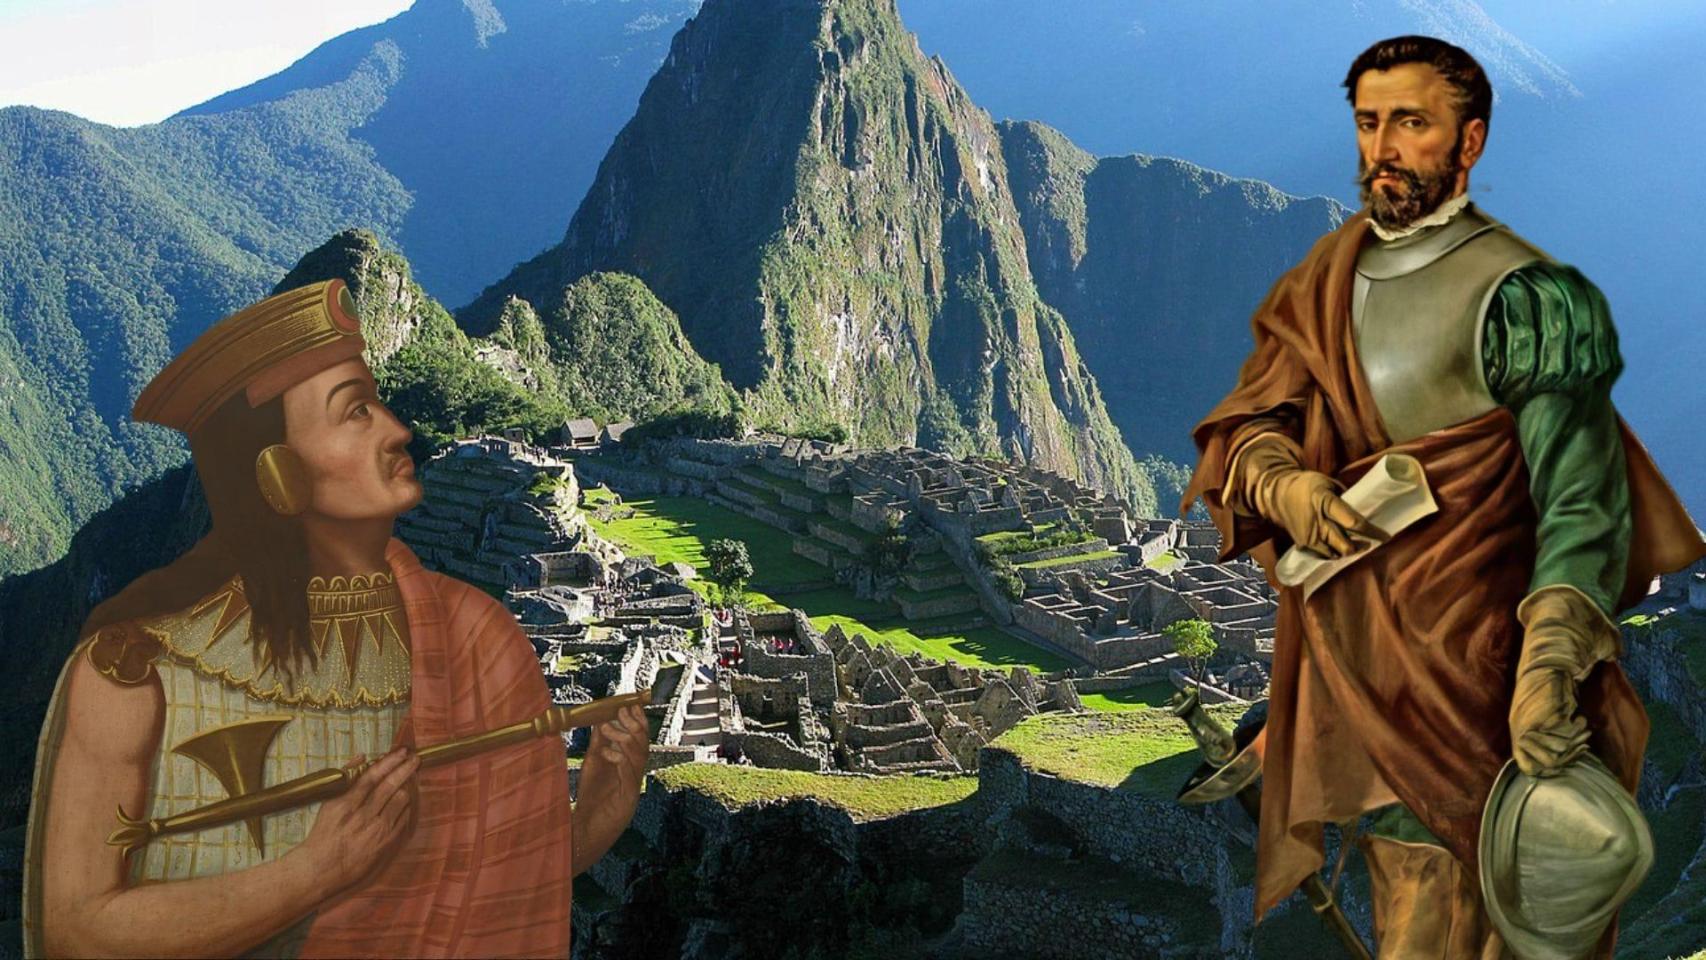 Juan de Betanzos, conquistador gallego y héroe en Perú: Se casó con una princesa y fue cronista de los Incas